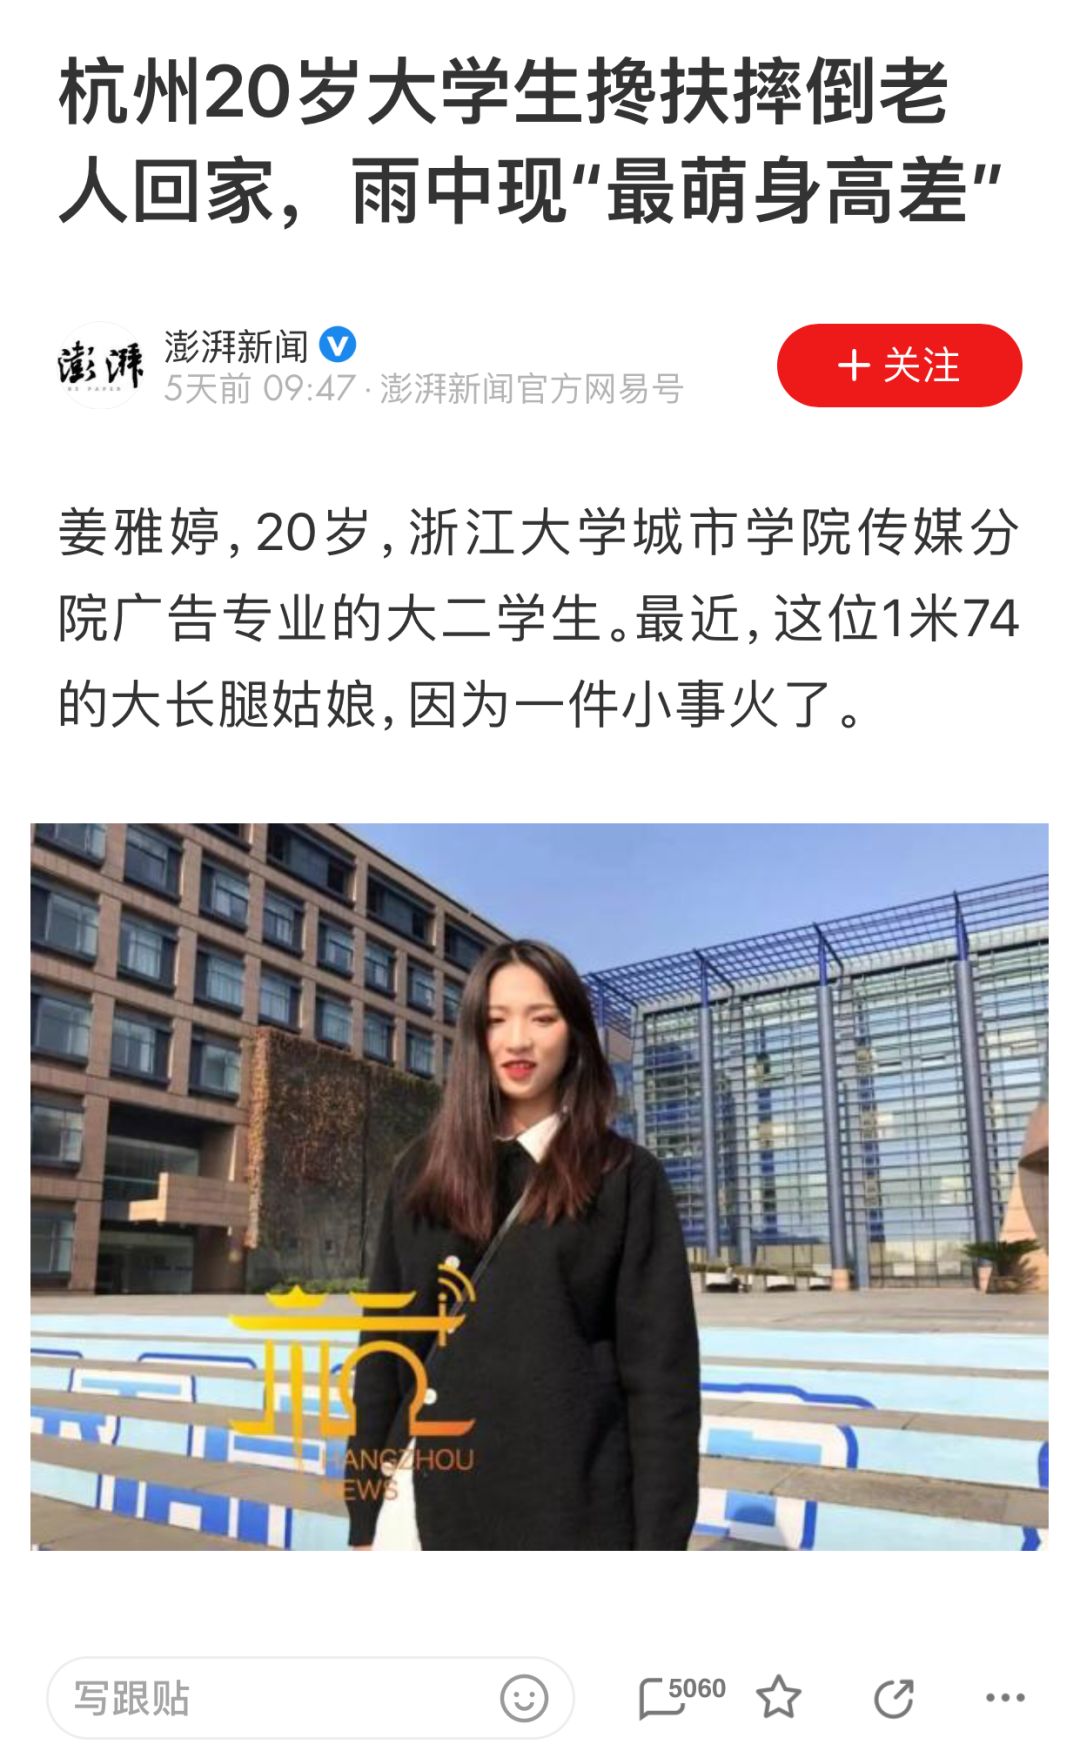 来自于各大媒体的报道浙江大学城市学院的大二学生她叫姜雅婷,20岁